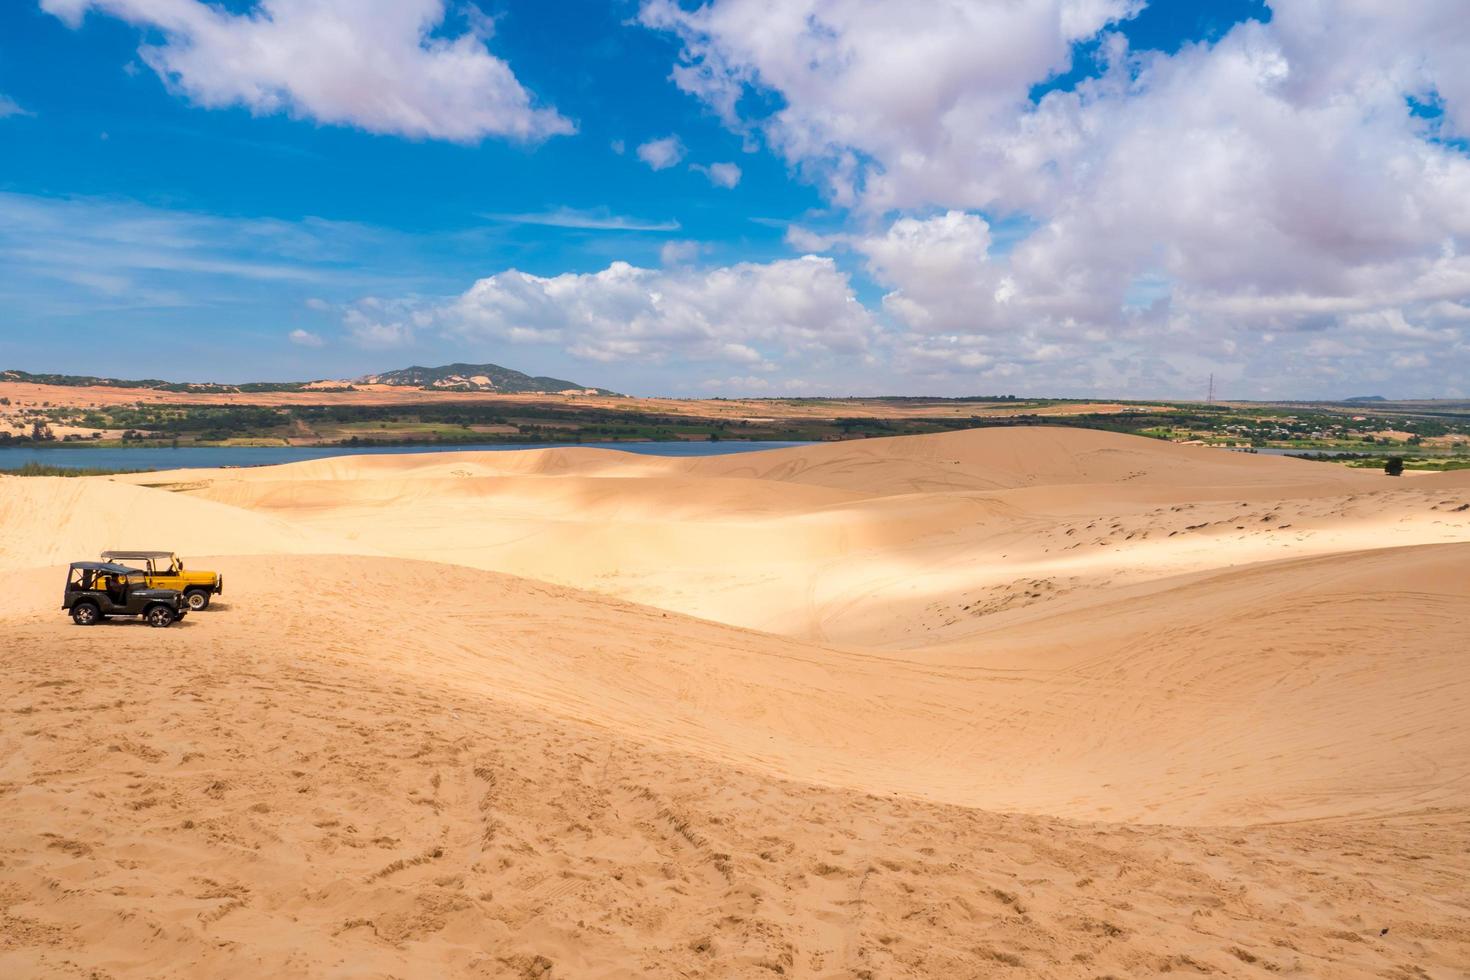 dunes de sable jaune à mui ne est une destination touristique populaire du vietnam photo